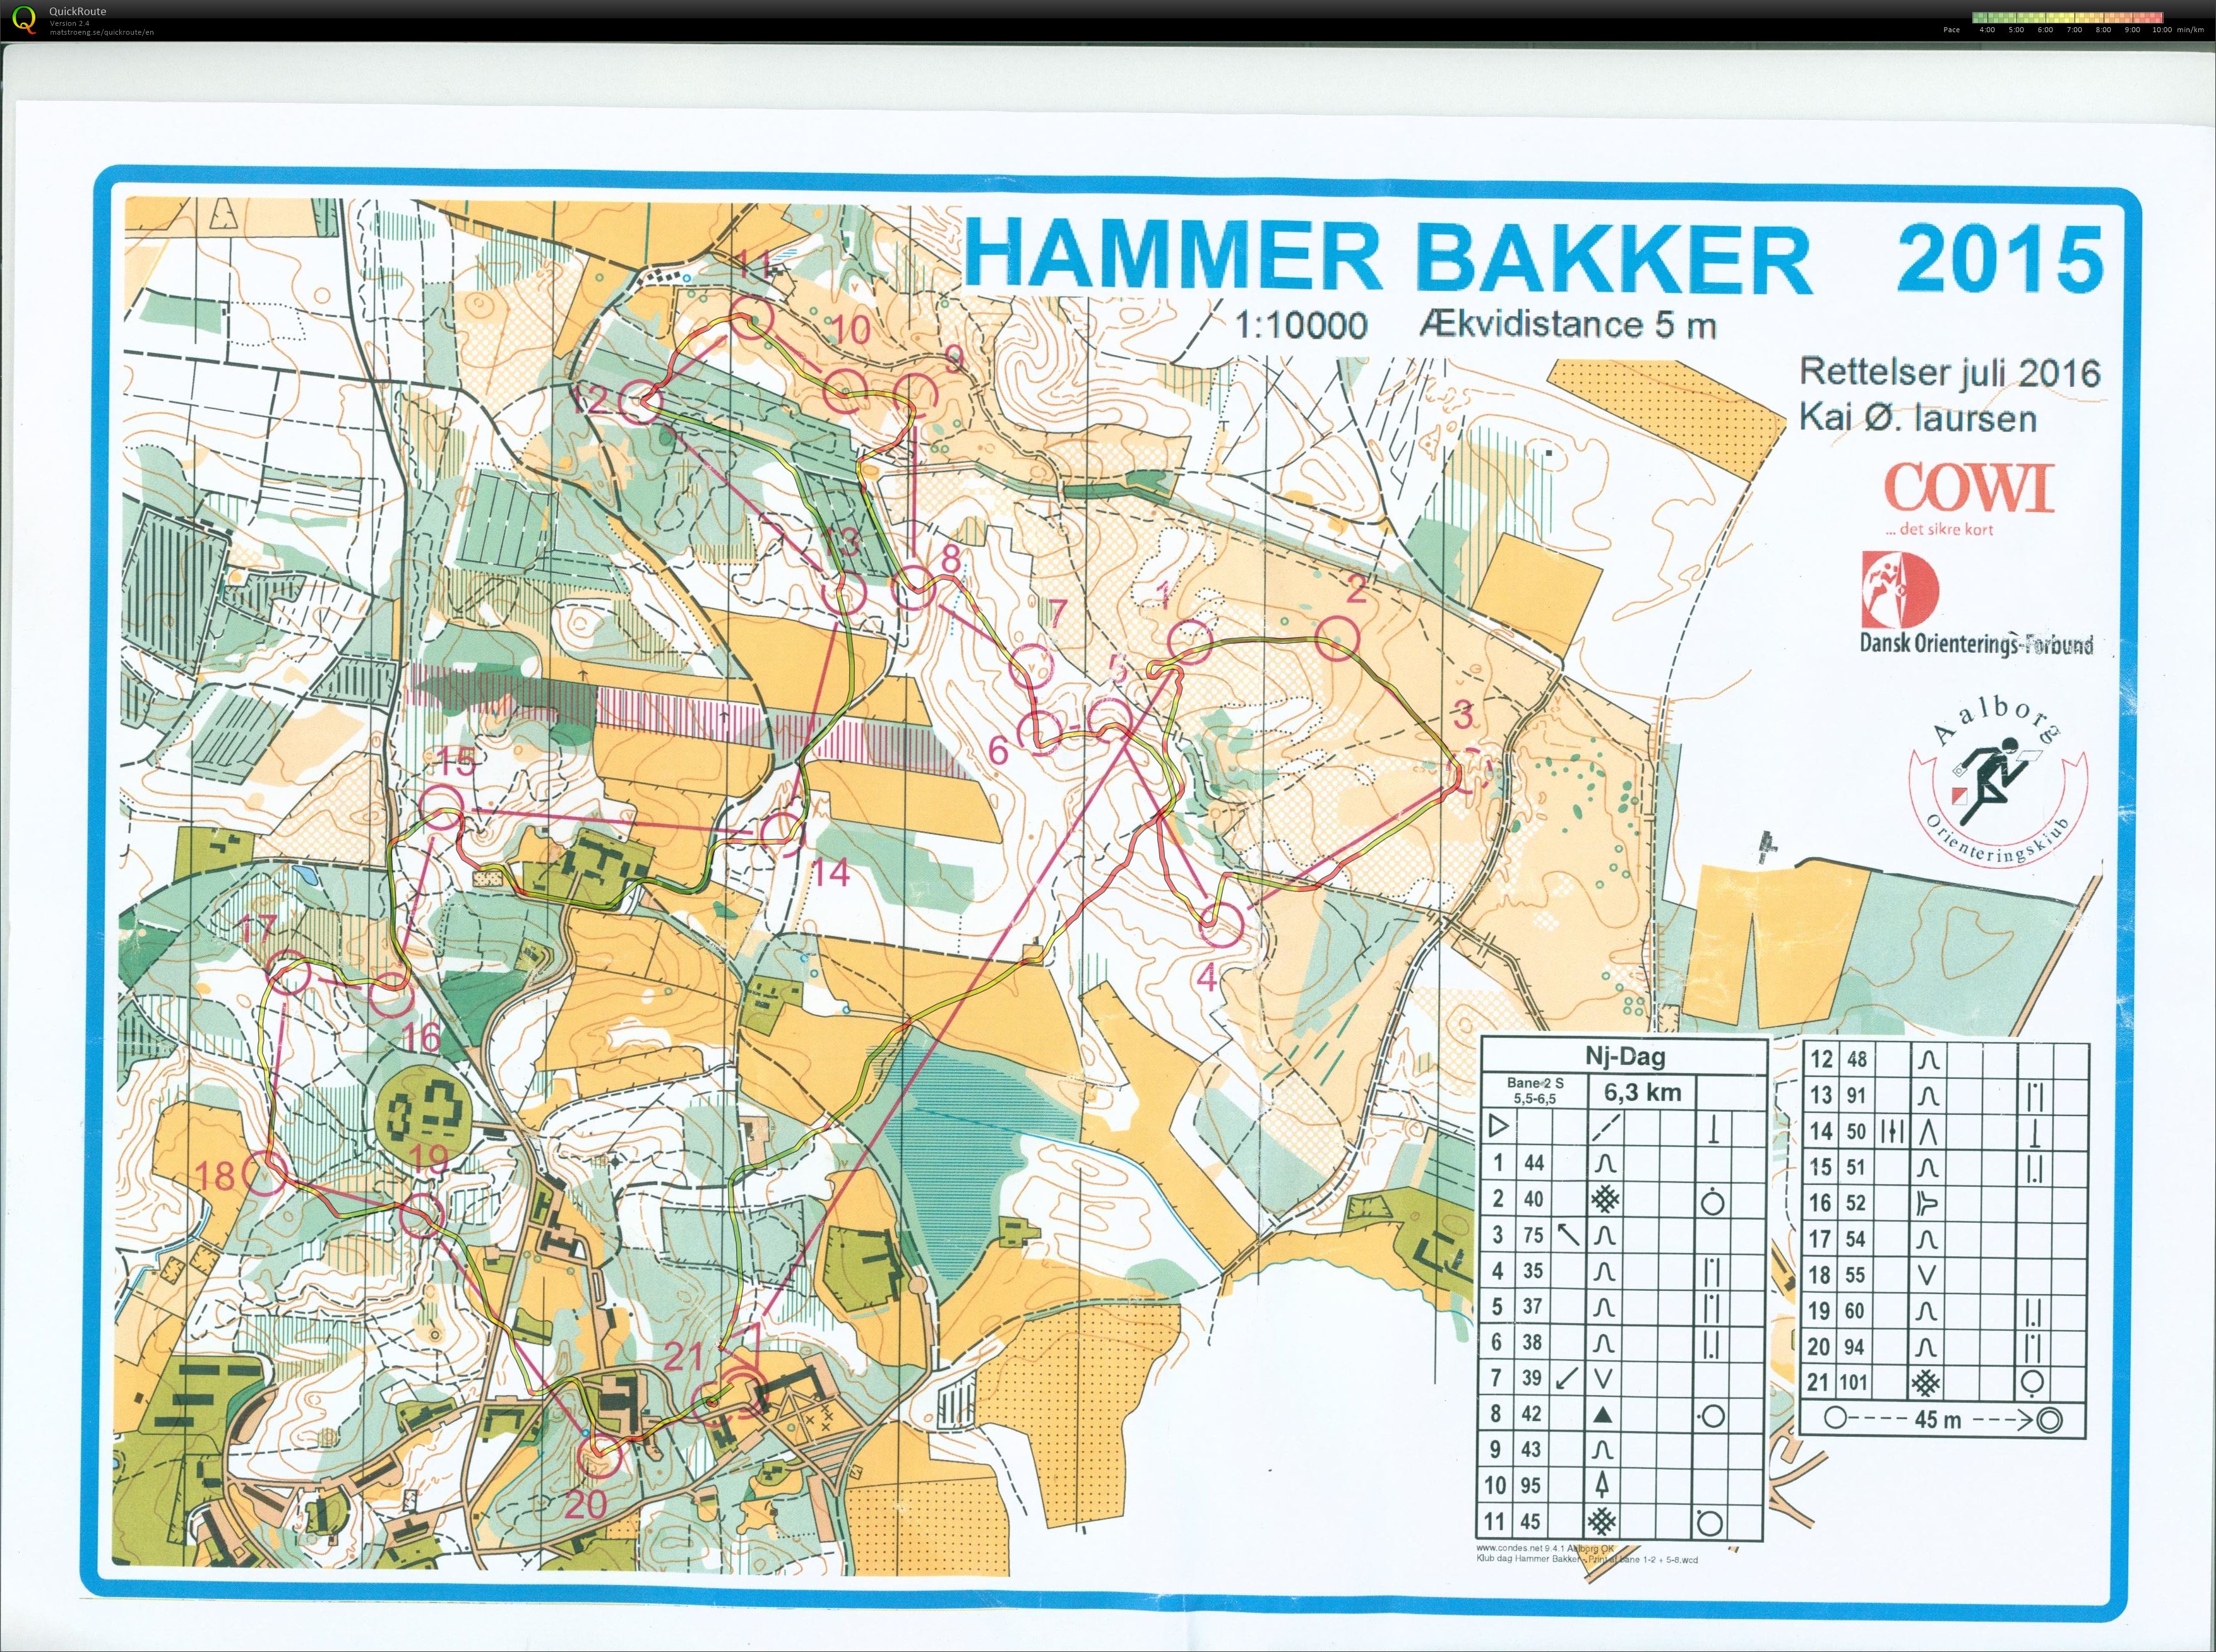 Hammer Bakker bane 2 Keld Gade (13-11-2016)